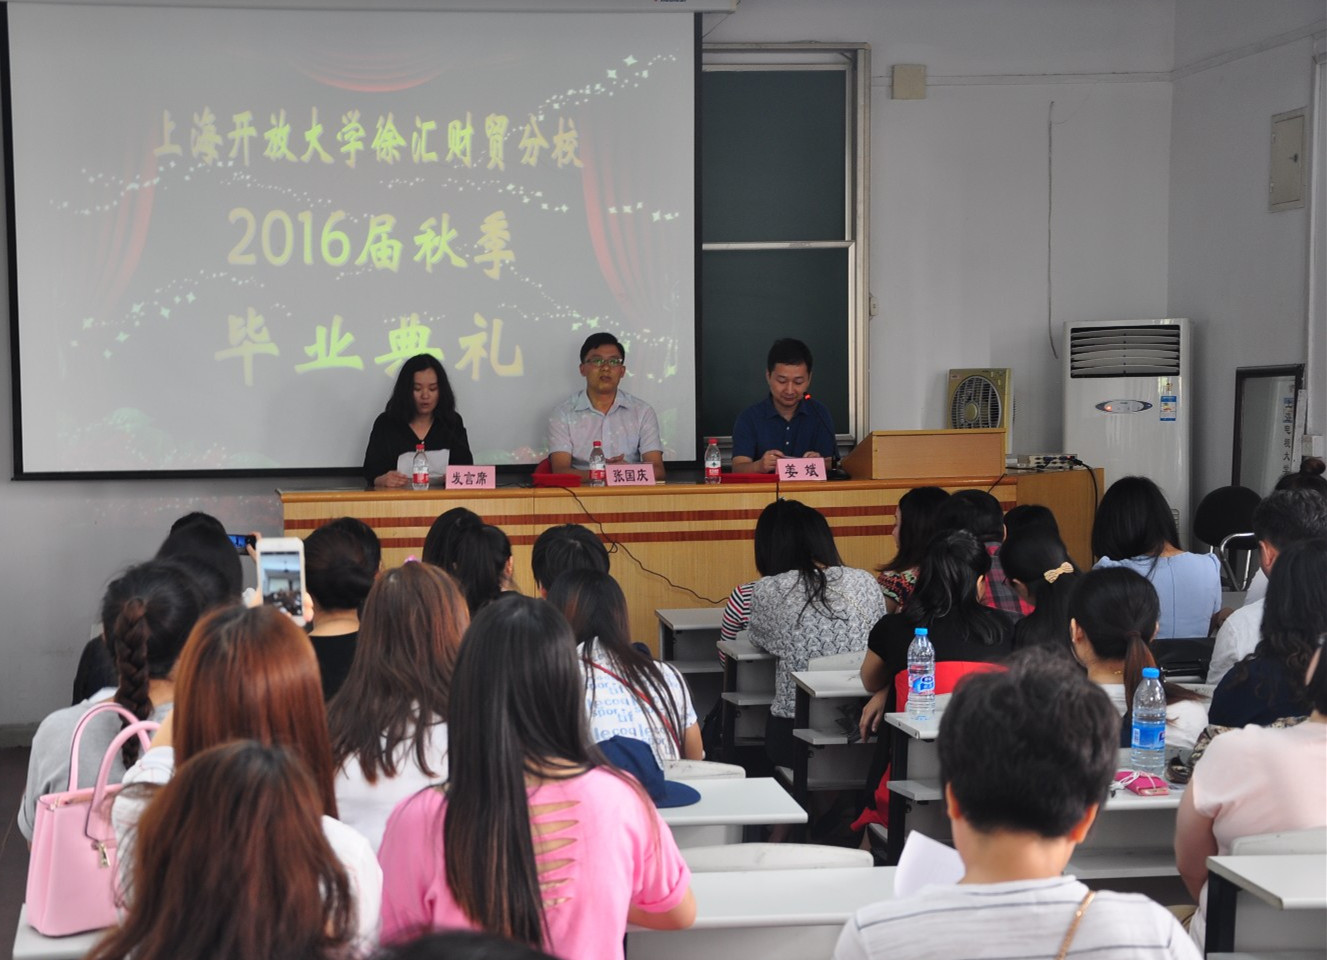 上海开放大学2016届秋季毕业典礼